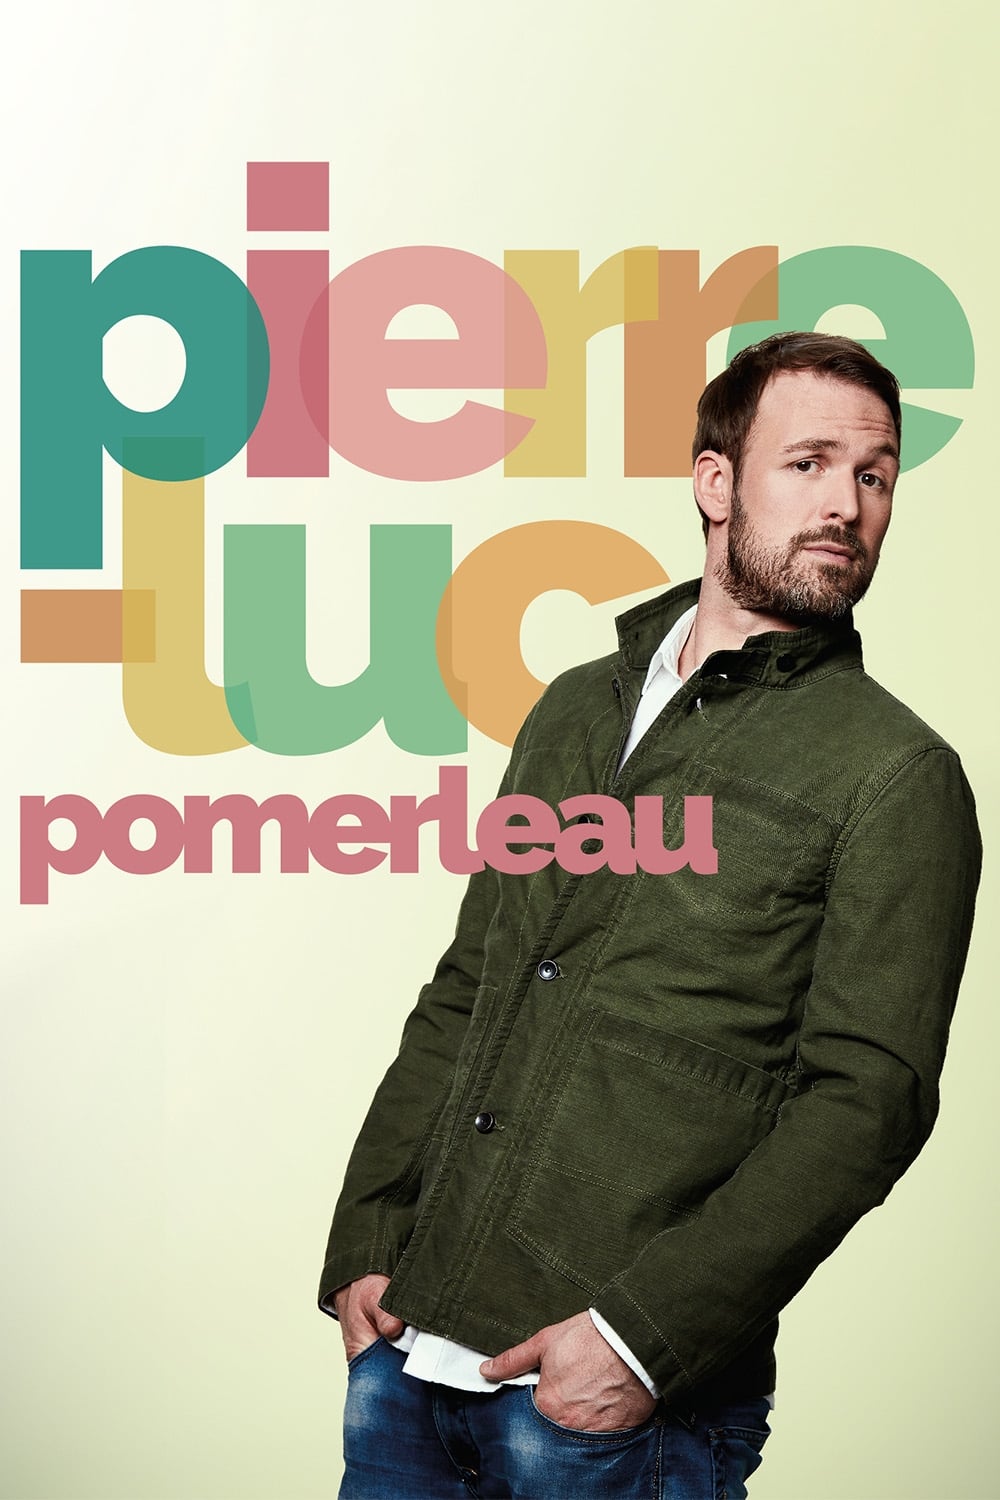 Pierre-Luc Pomerleau